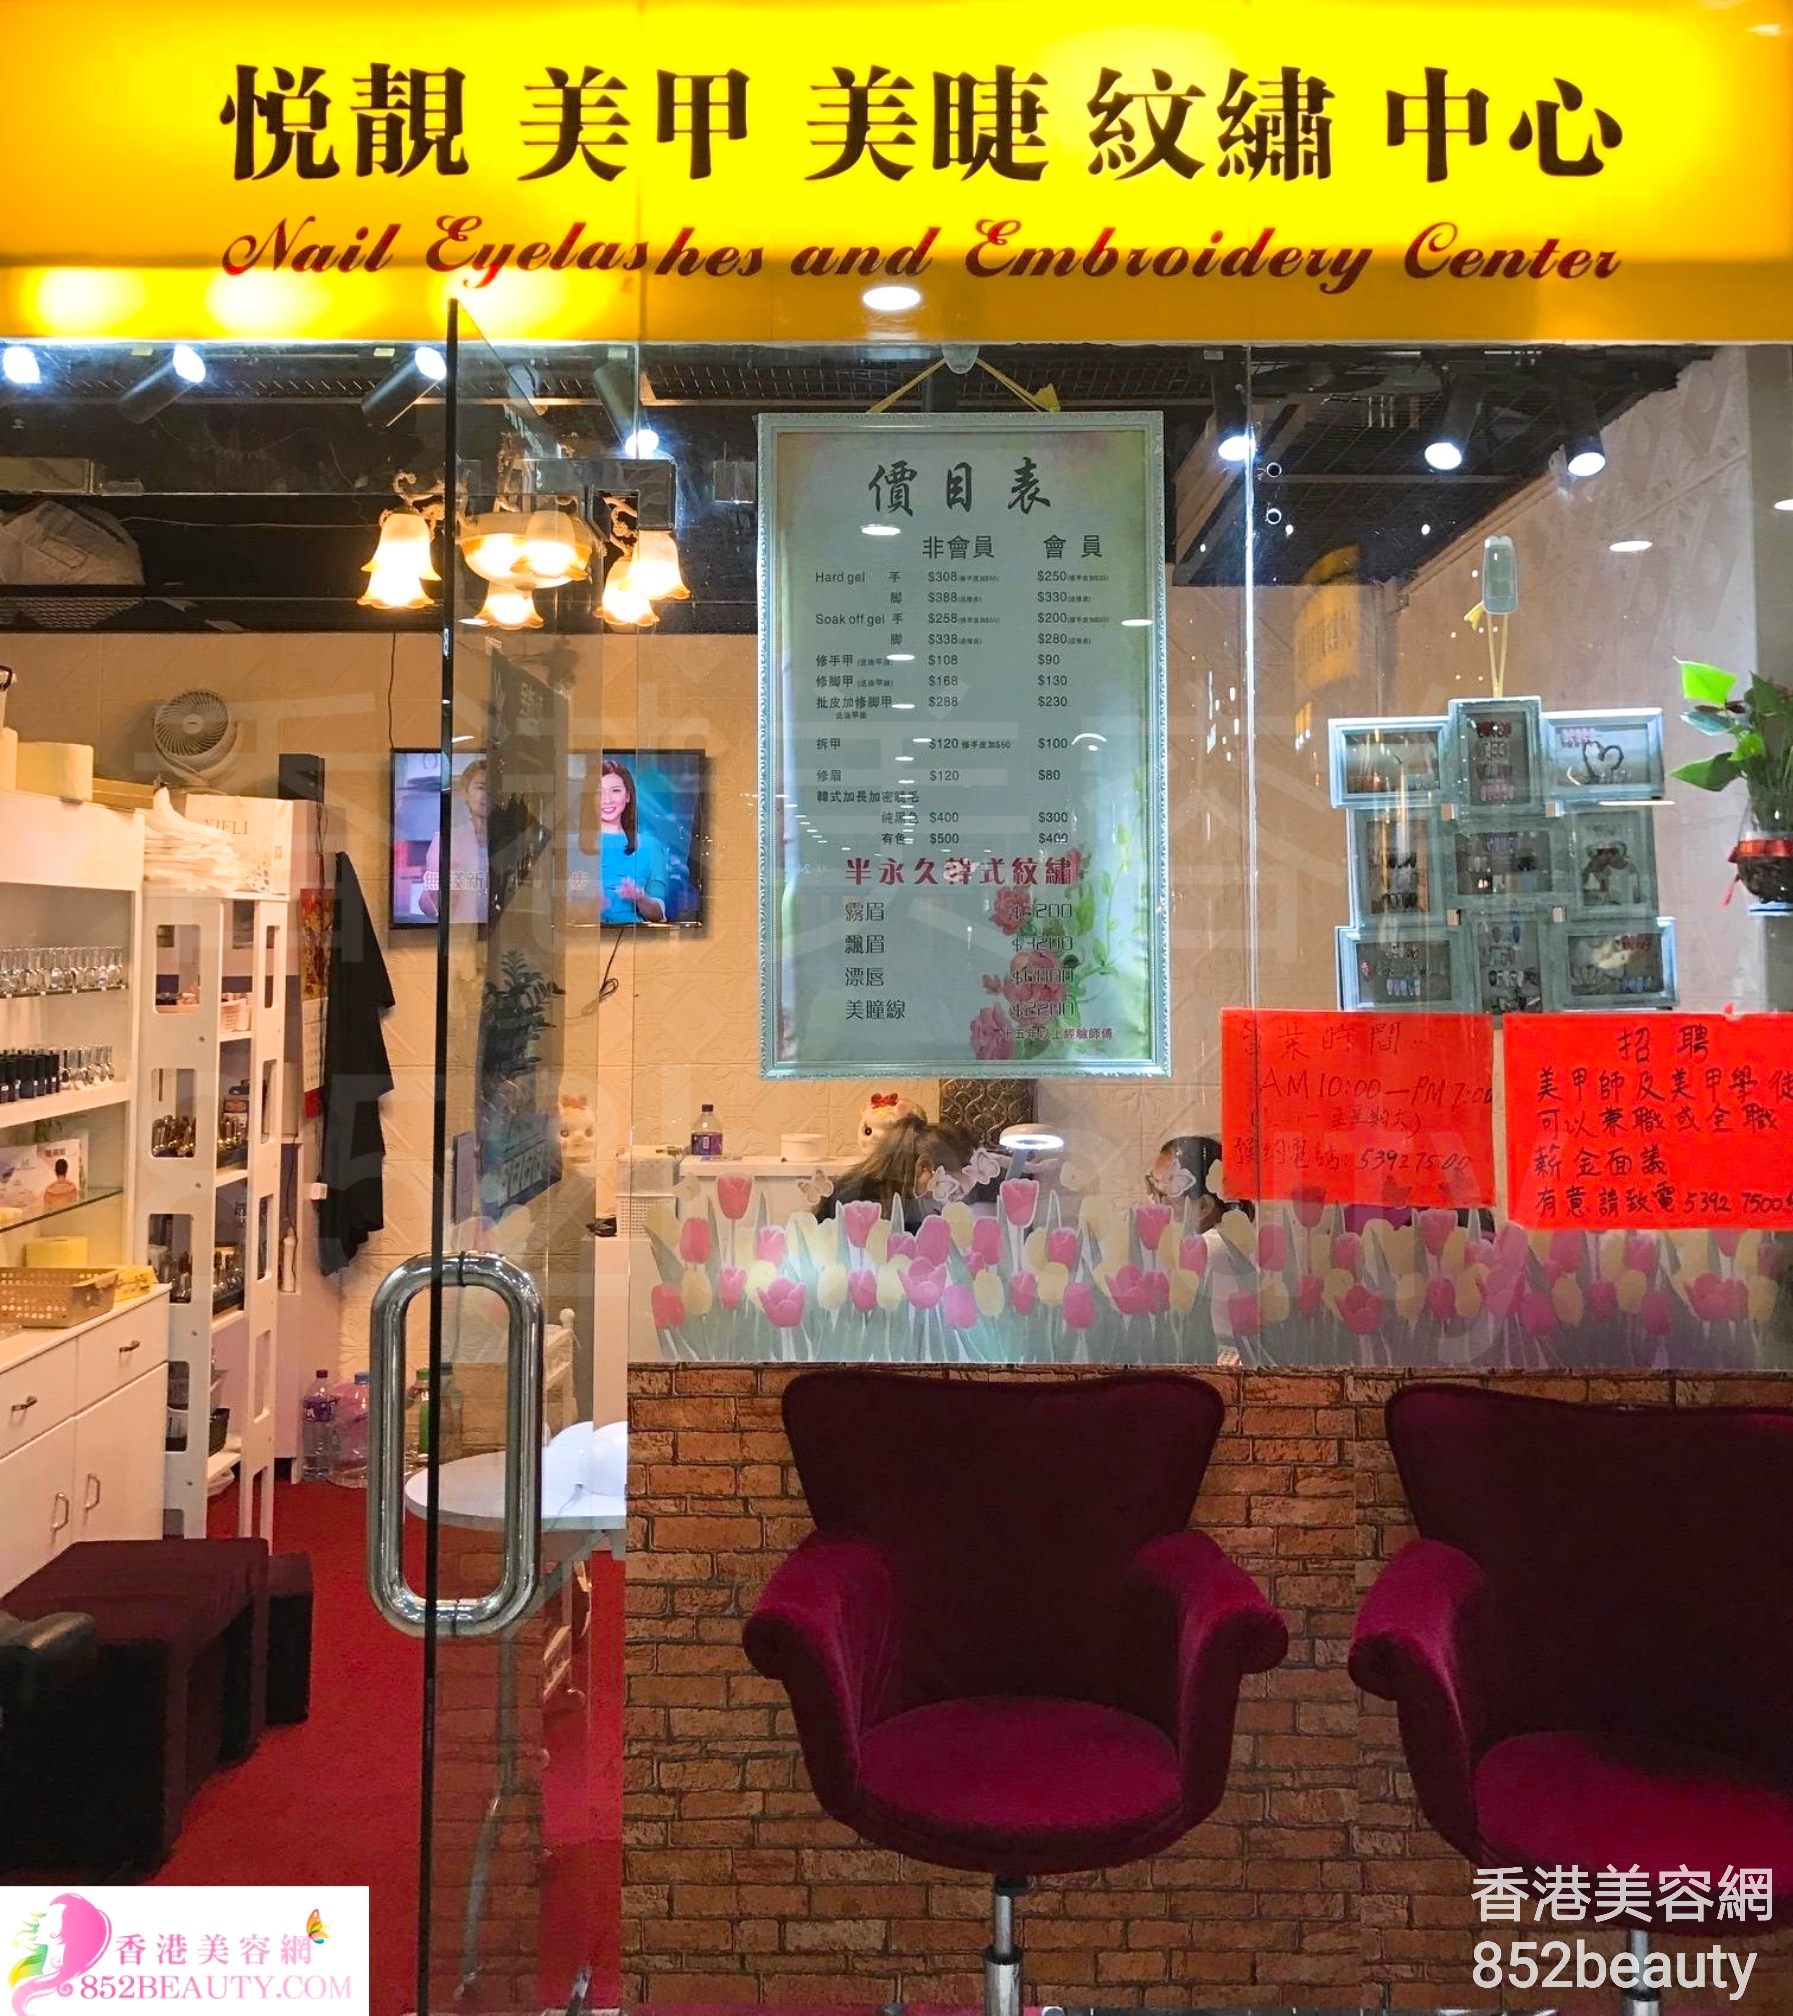 香港美容網 Hong Kong Beauty Salon 美容院 / 美容師: 悅靚美甲美睫紋繡中心